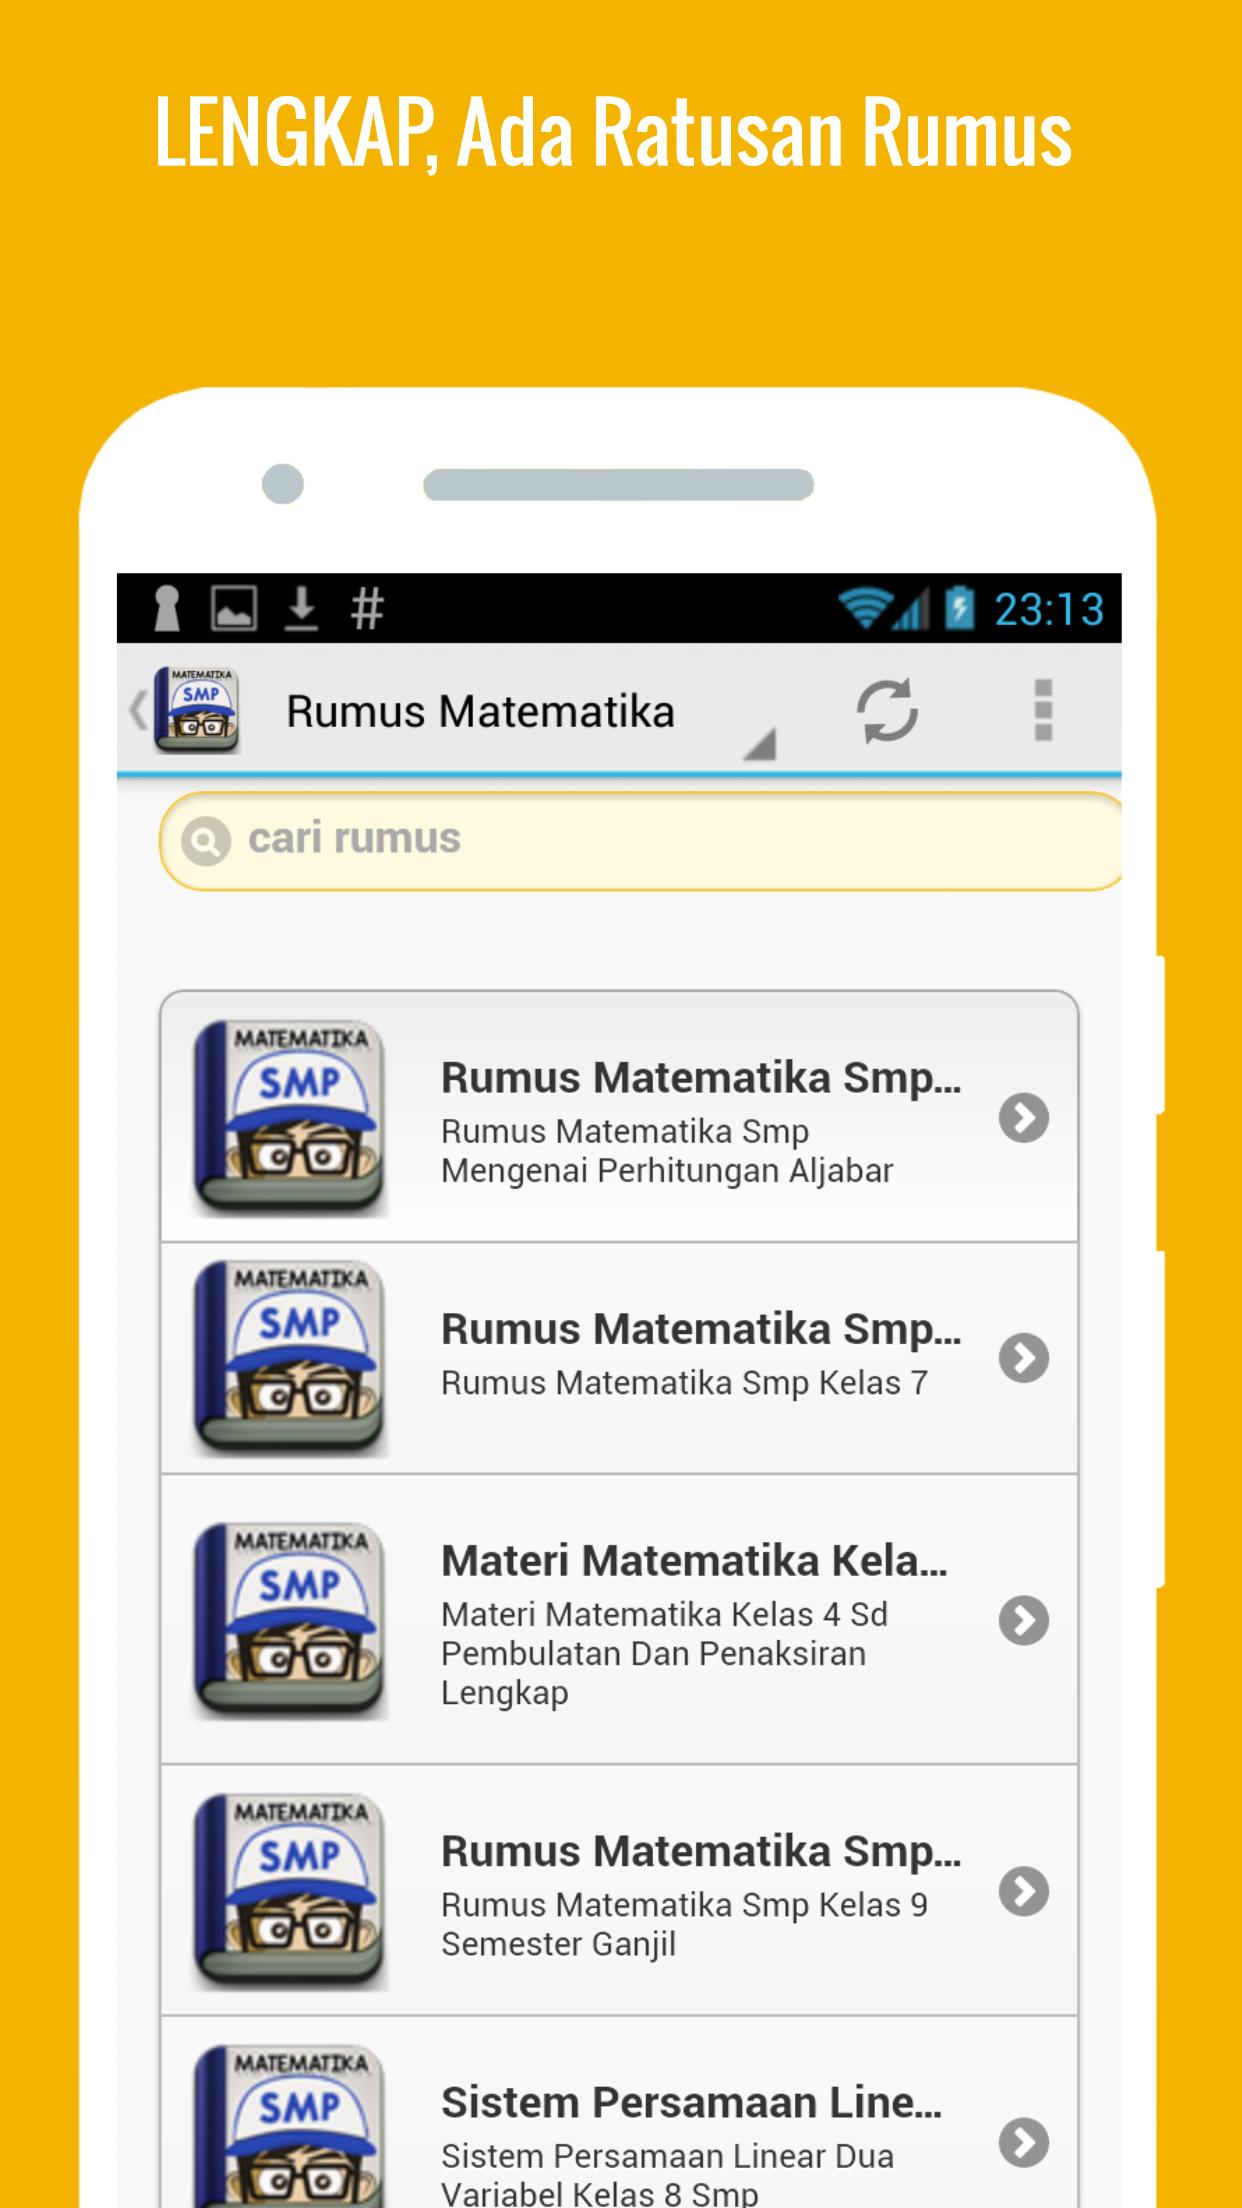 Rumus Matematika Smp For Android Apk Download